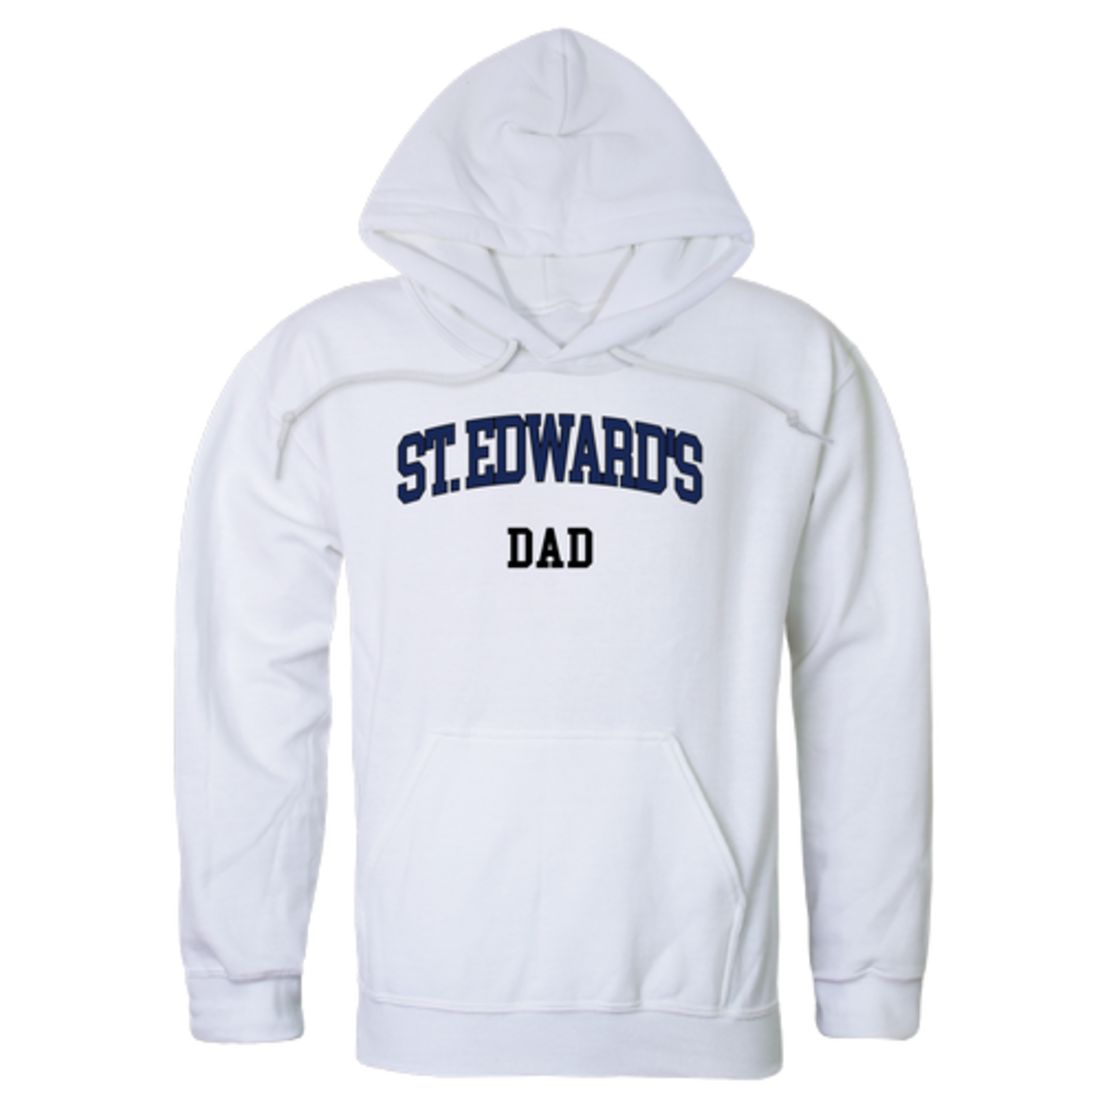 St.-Edward's-University-Hilltoppers-Dad-Fleece-Hoodie-Sweatshirts